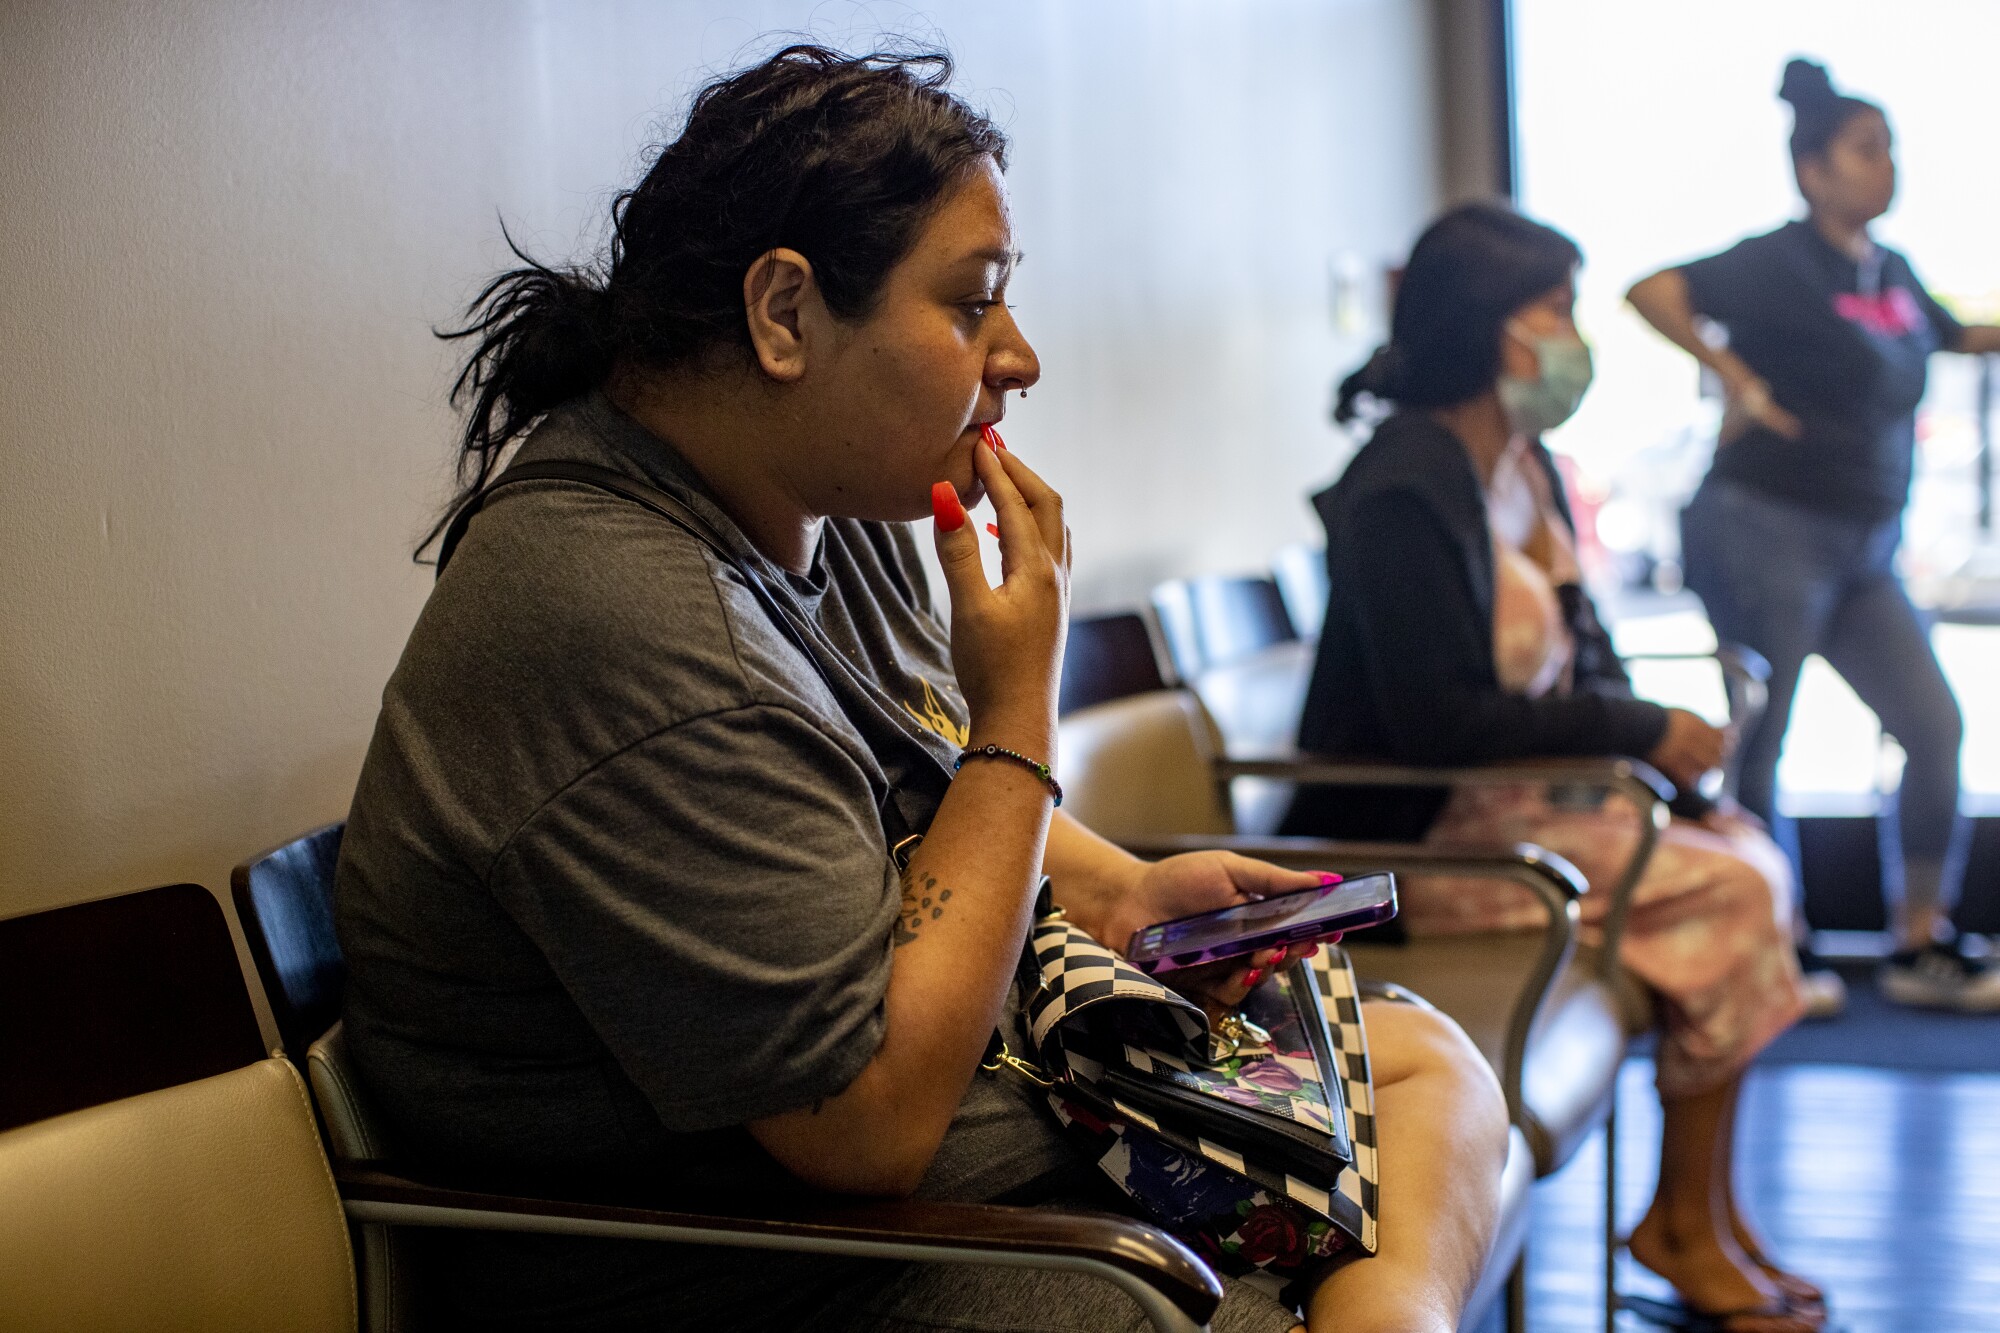 Sentada en la sala de espera, una paciente contempla sus opciones de aborto.